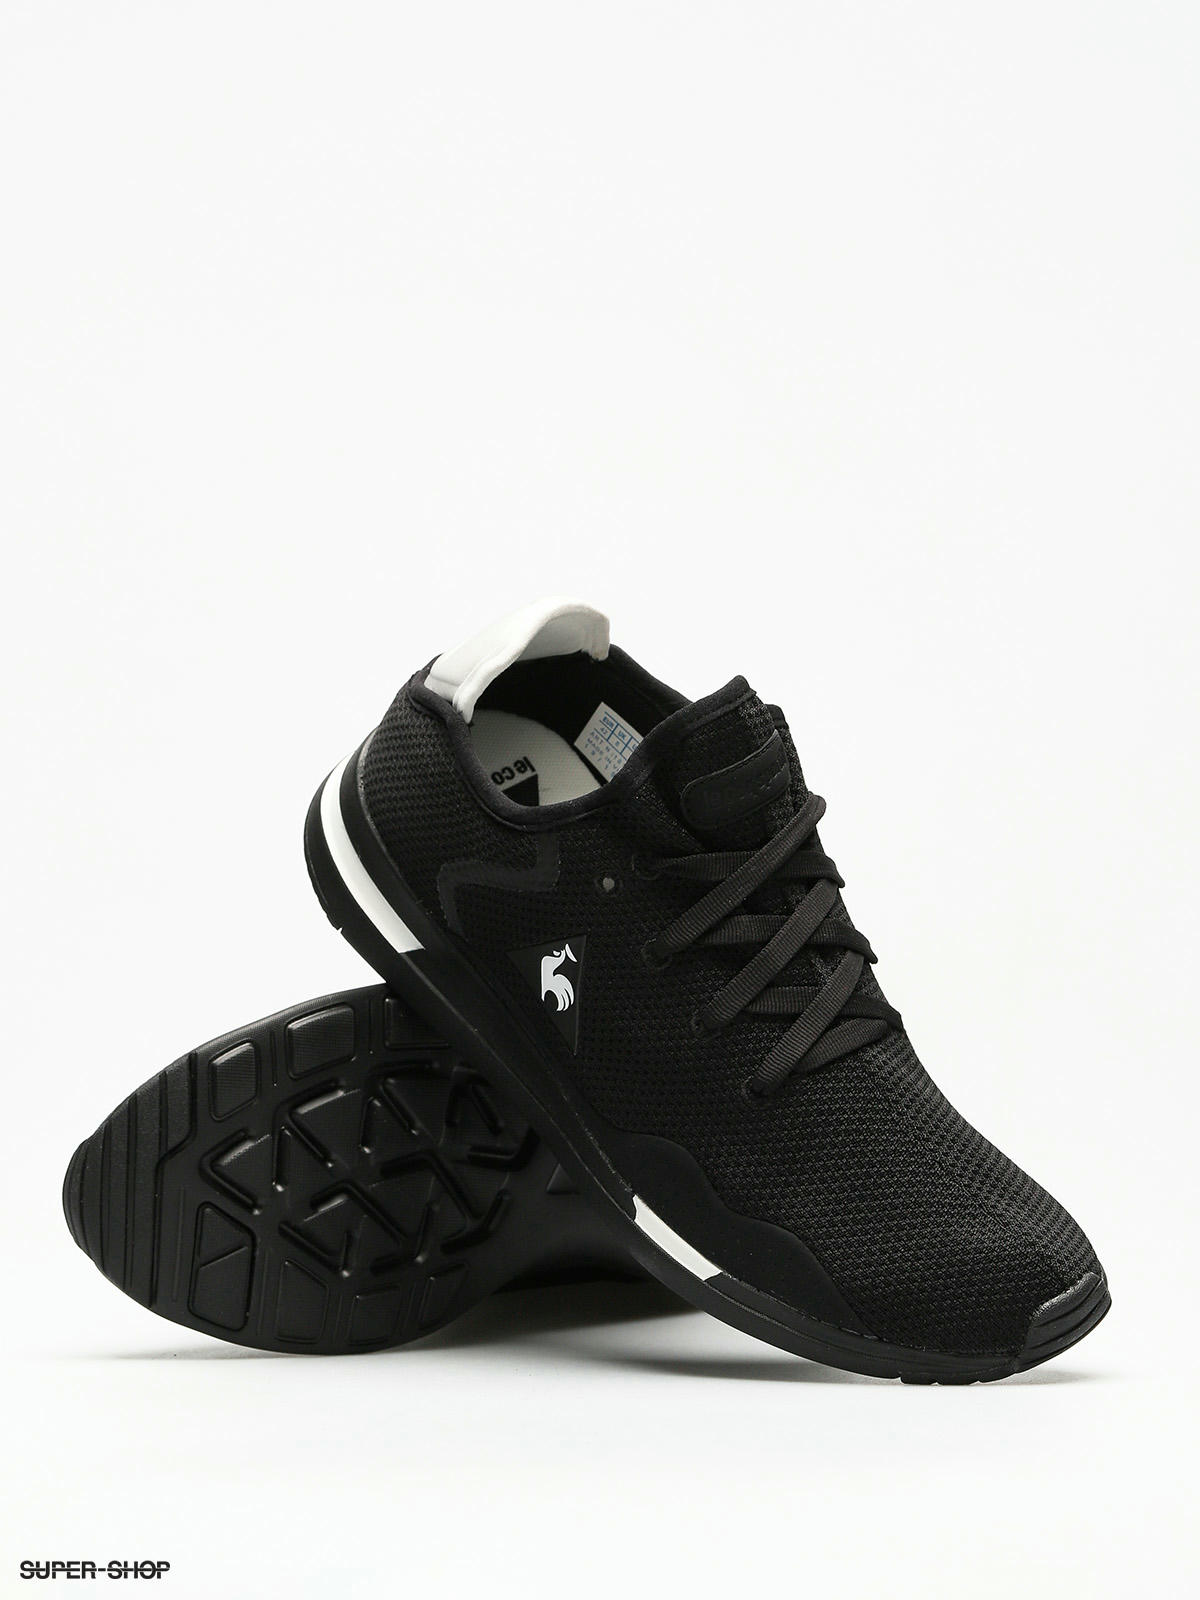 Le Coq Sportif Shoes Solas Sport (black/optical white)